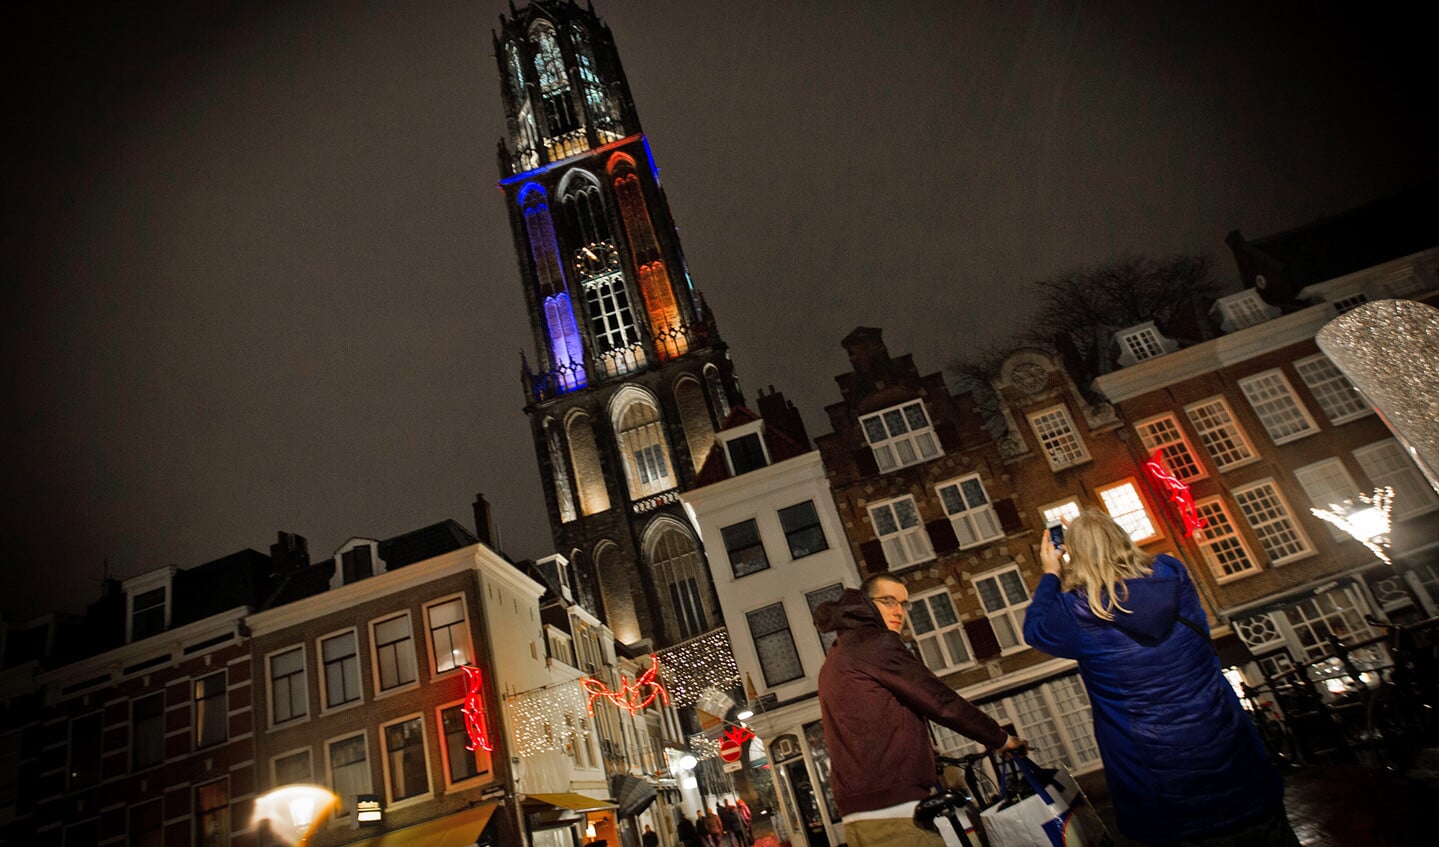 Utrecht is een bruisende stad. En de diversiteit die je onder de studenten tegenkomt, zou ook voor theologen een verrijking zijn.